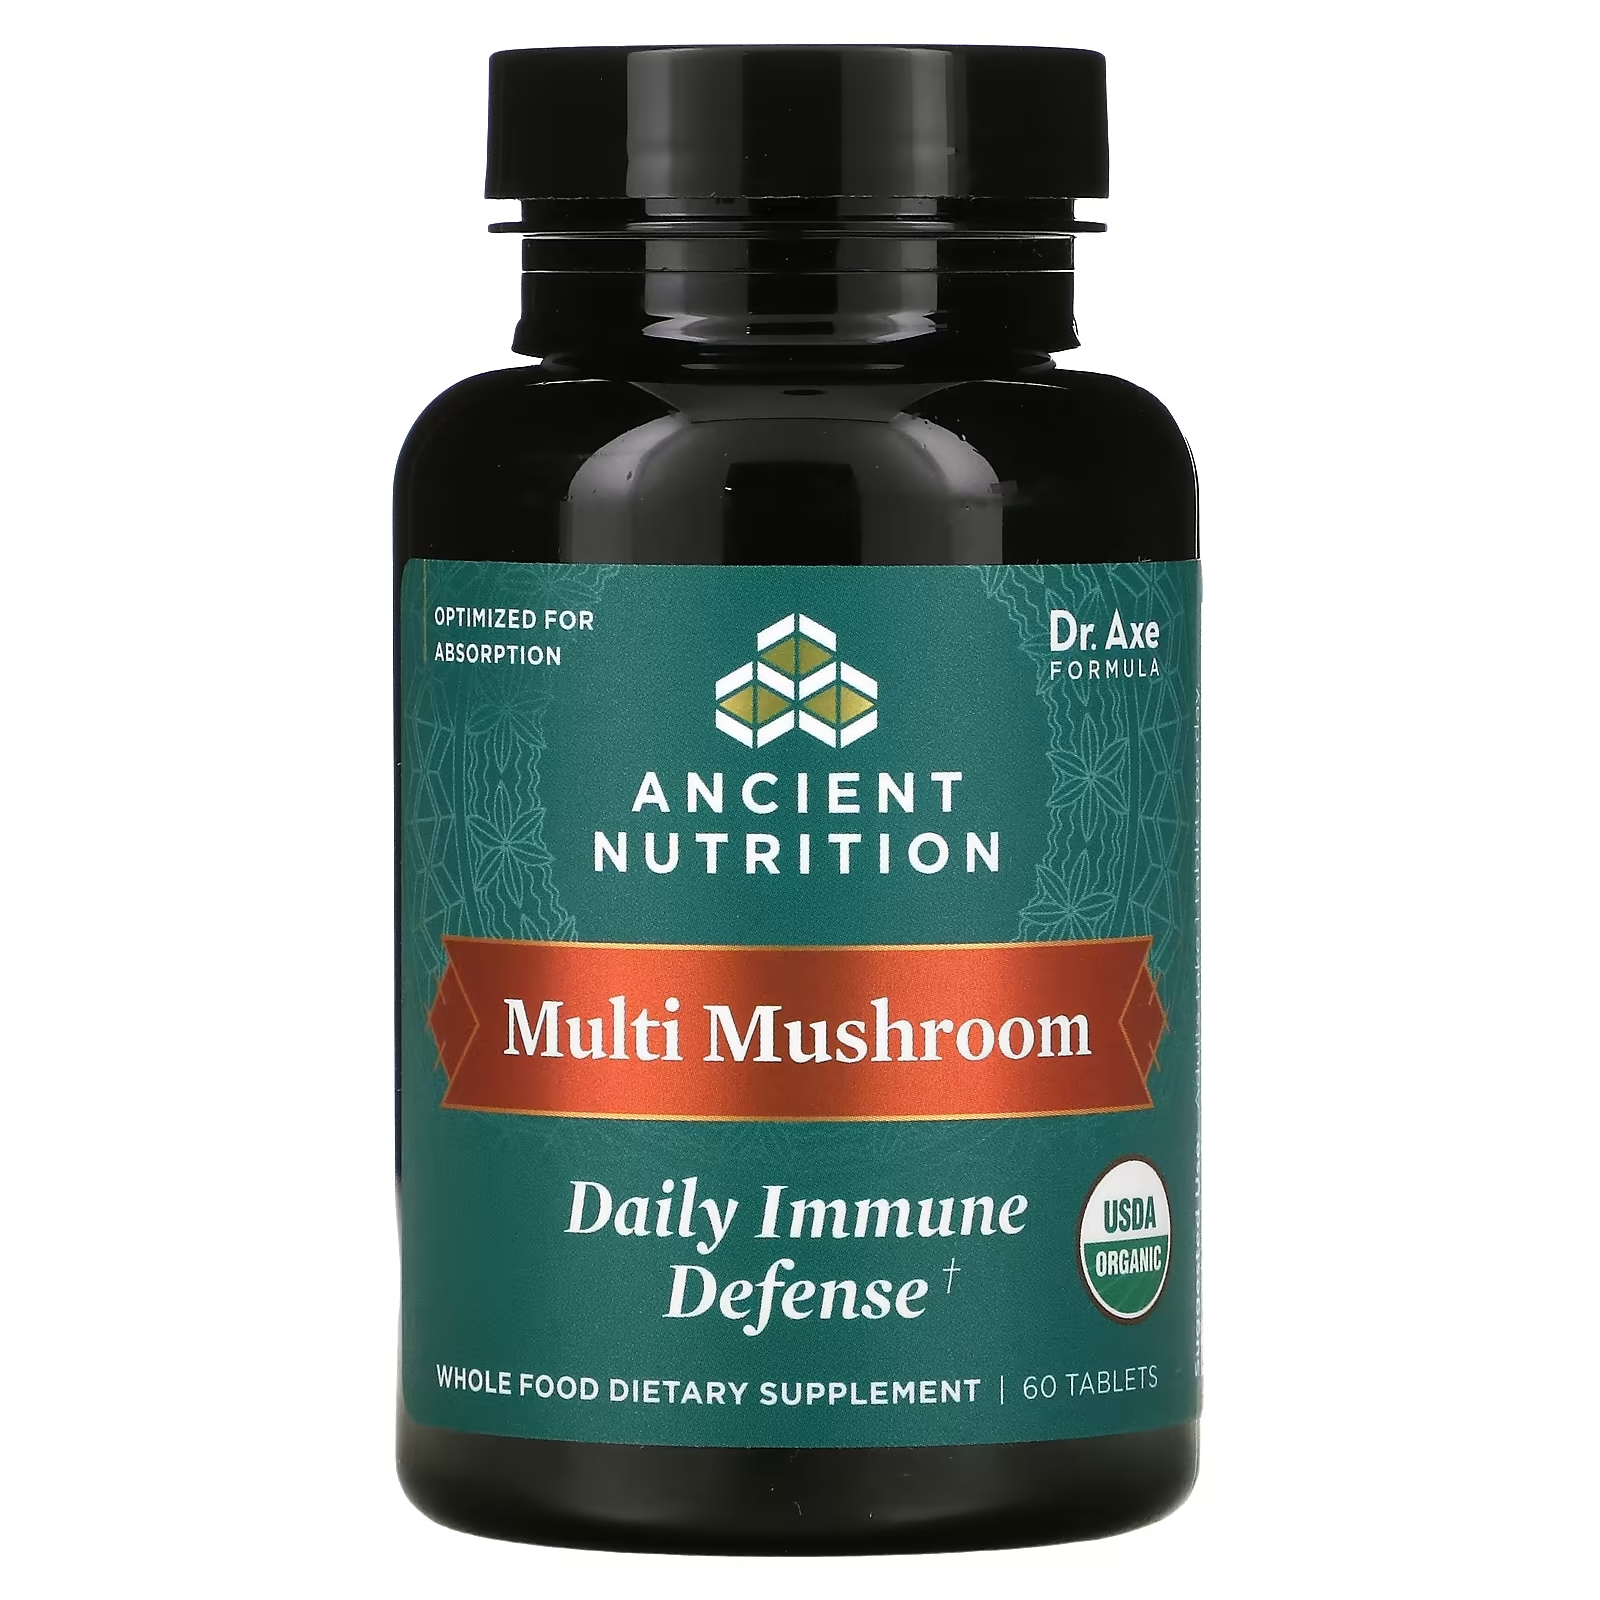 Dr. Axe Ancient Nutrition Multi Mushroom ежедневная защита иммунитета, 60 таблеток